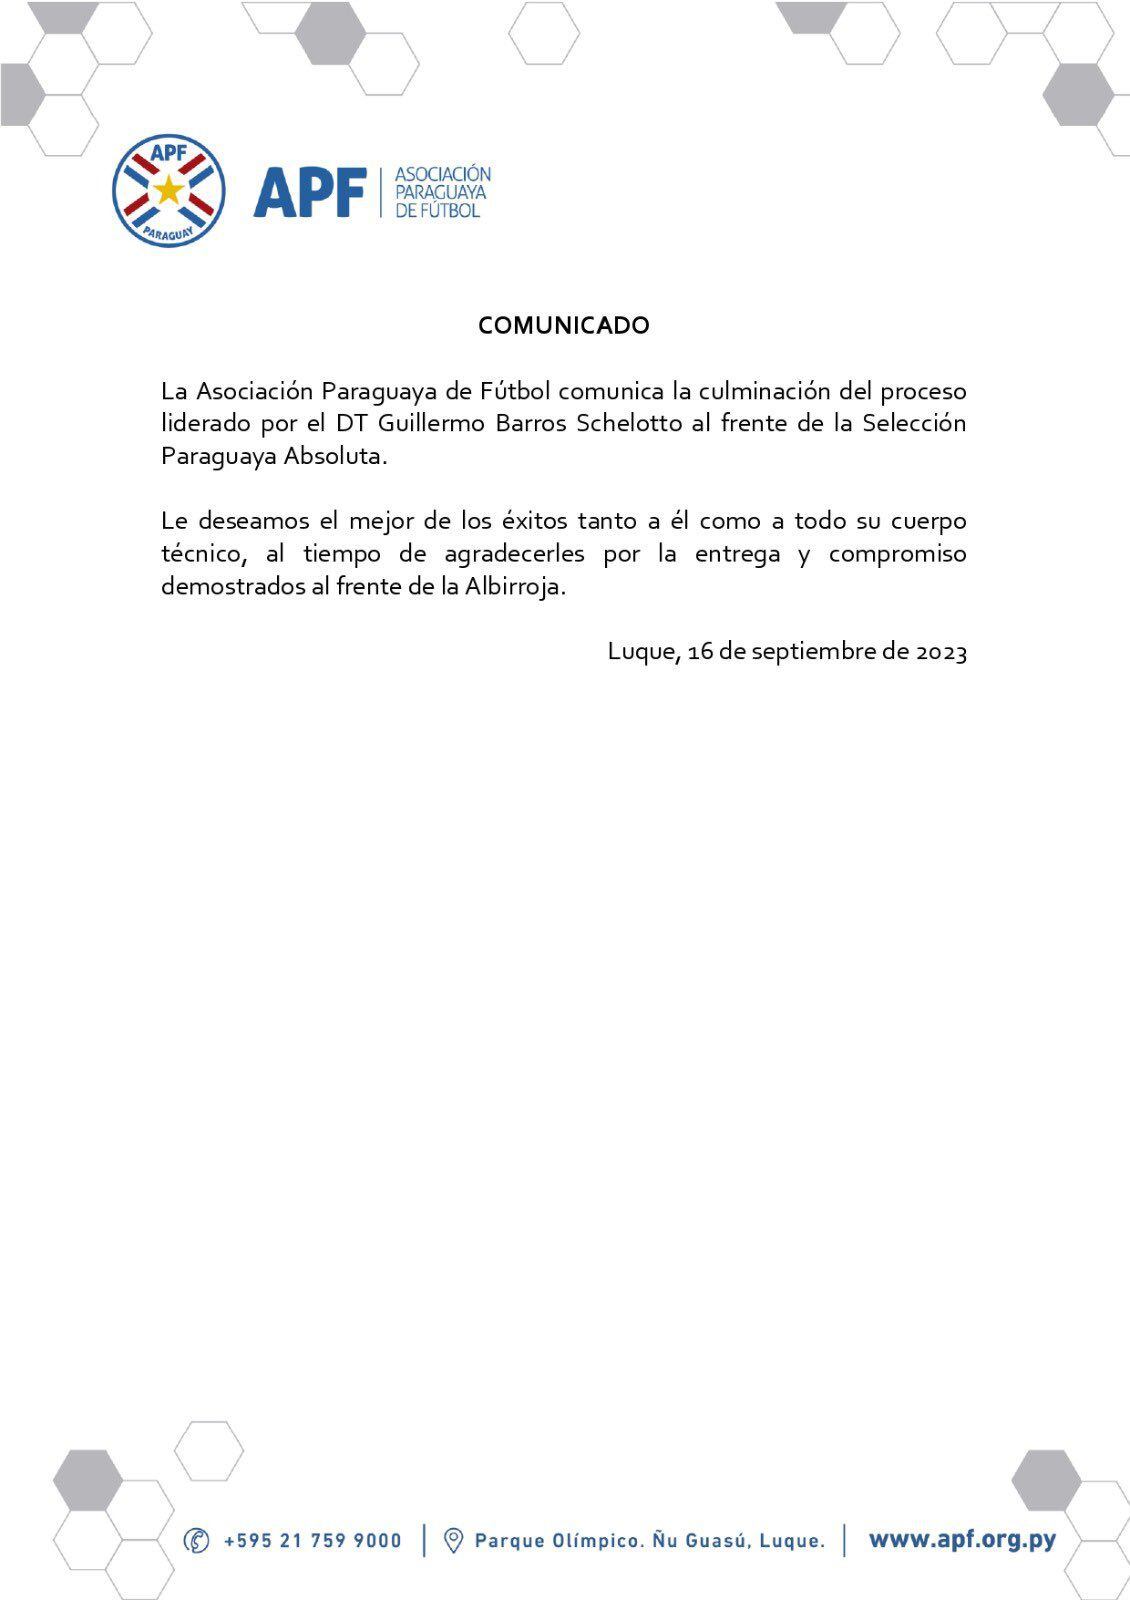 Comunicado de la Asociación Paraguaya de Fútbol.